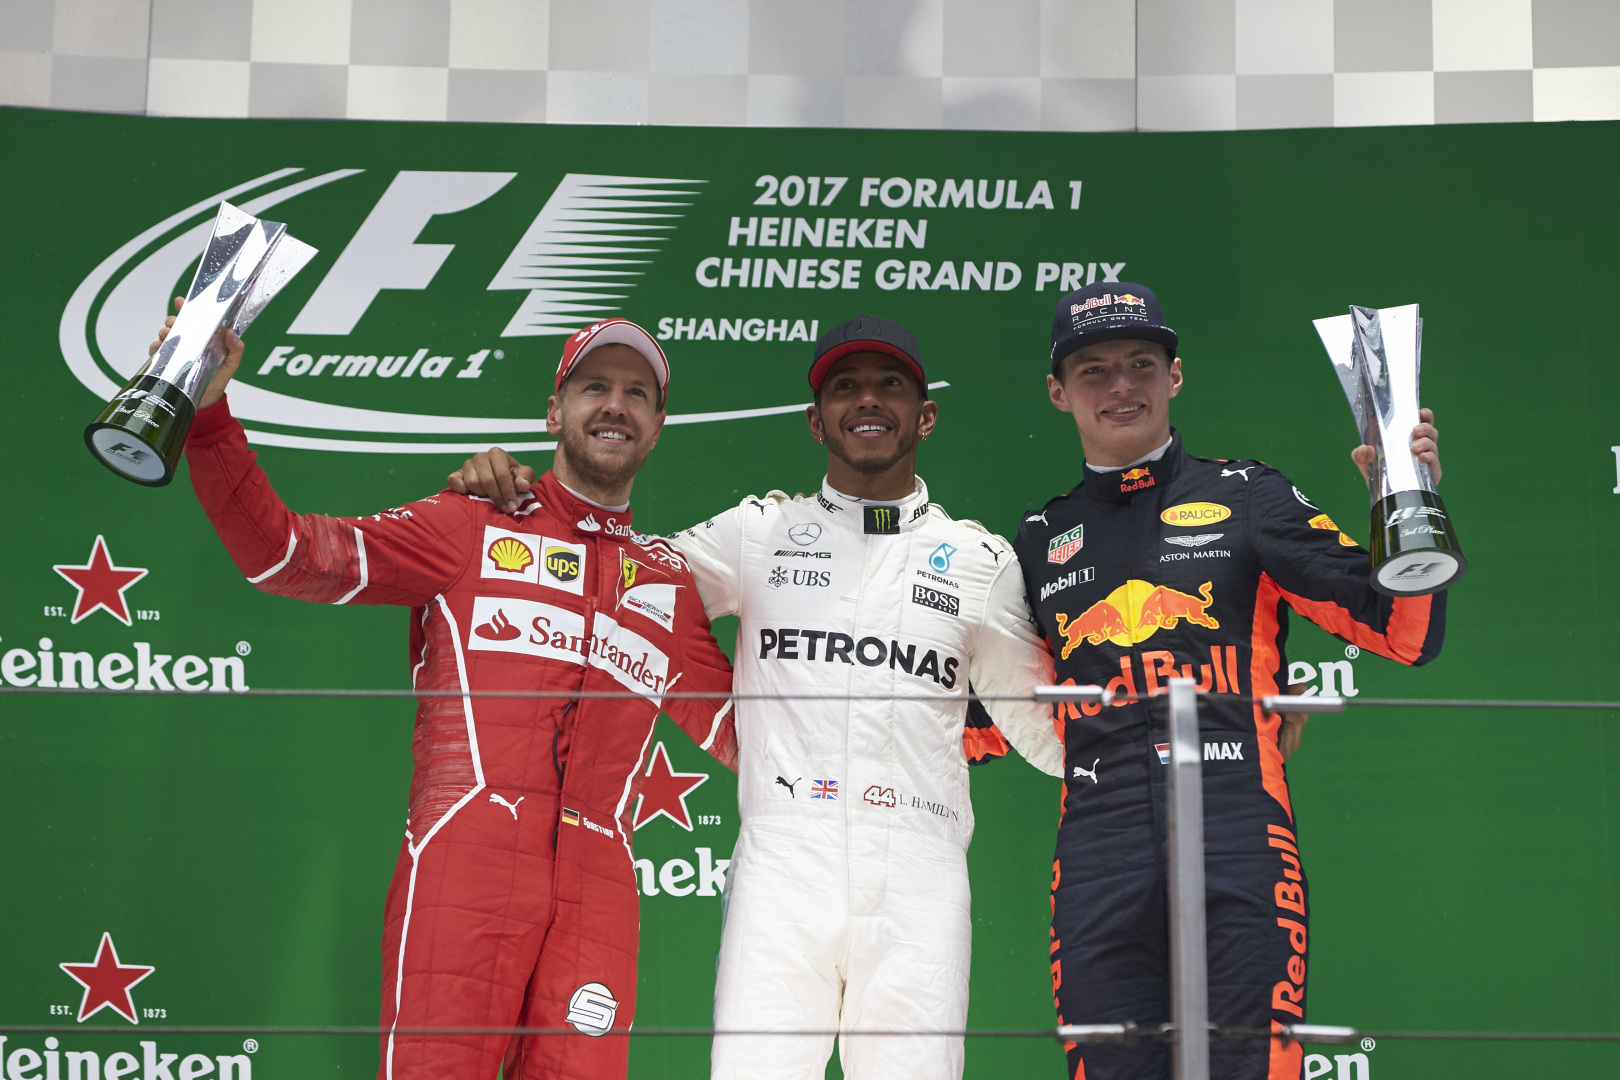 2017 Chinese Grand Prix, Sunday – Steve Etherington